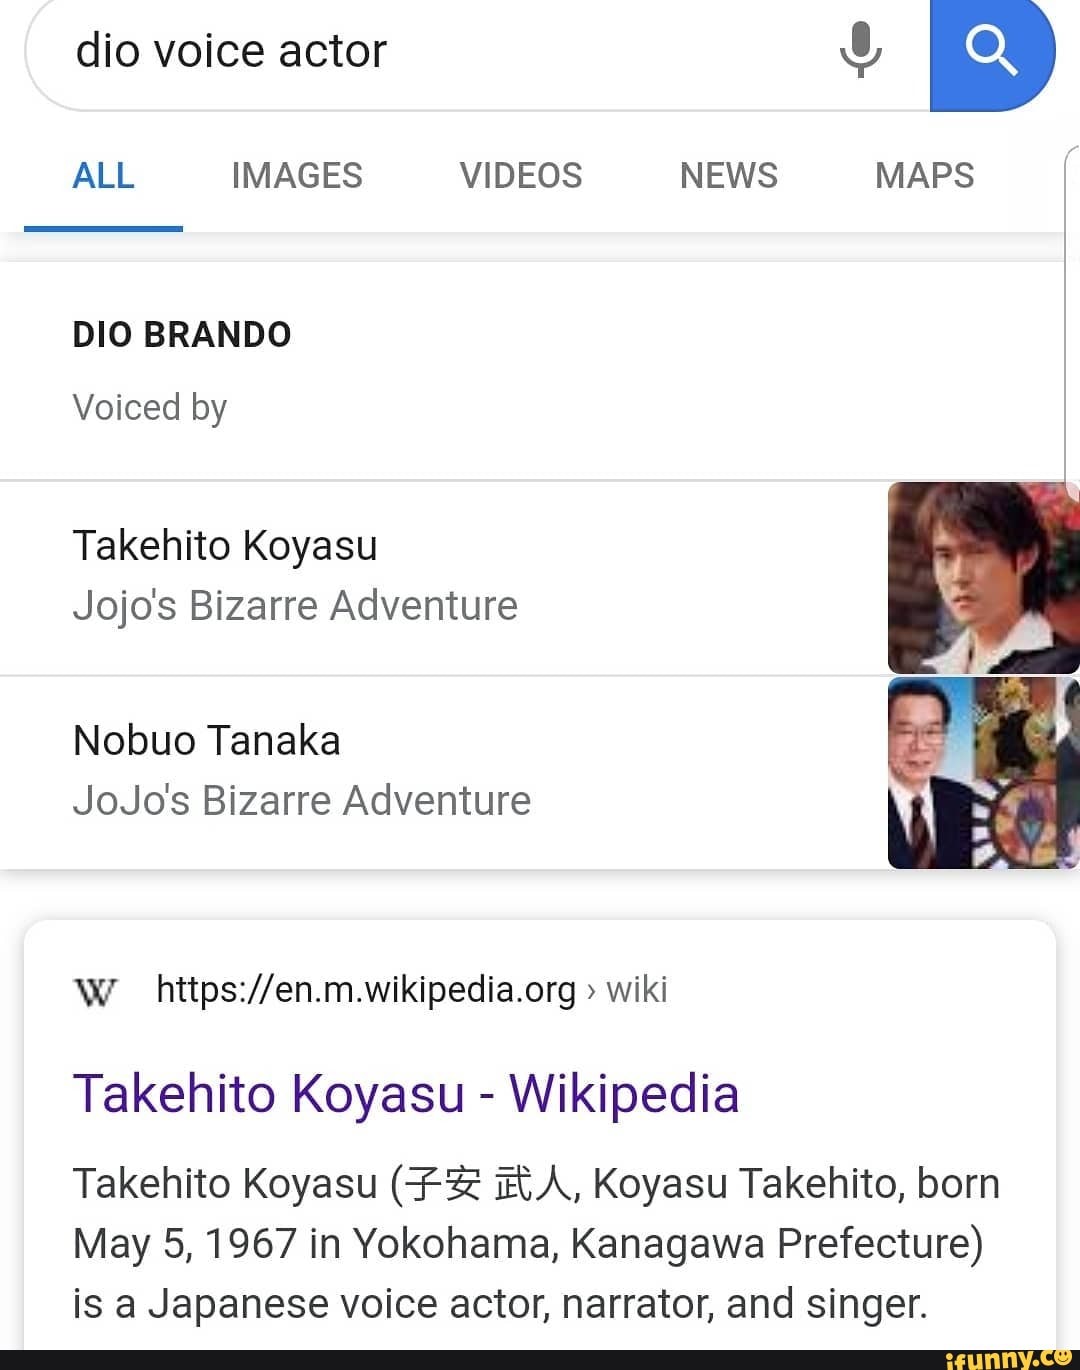 Dio Brando - Wikipedia